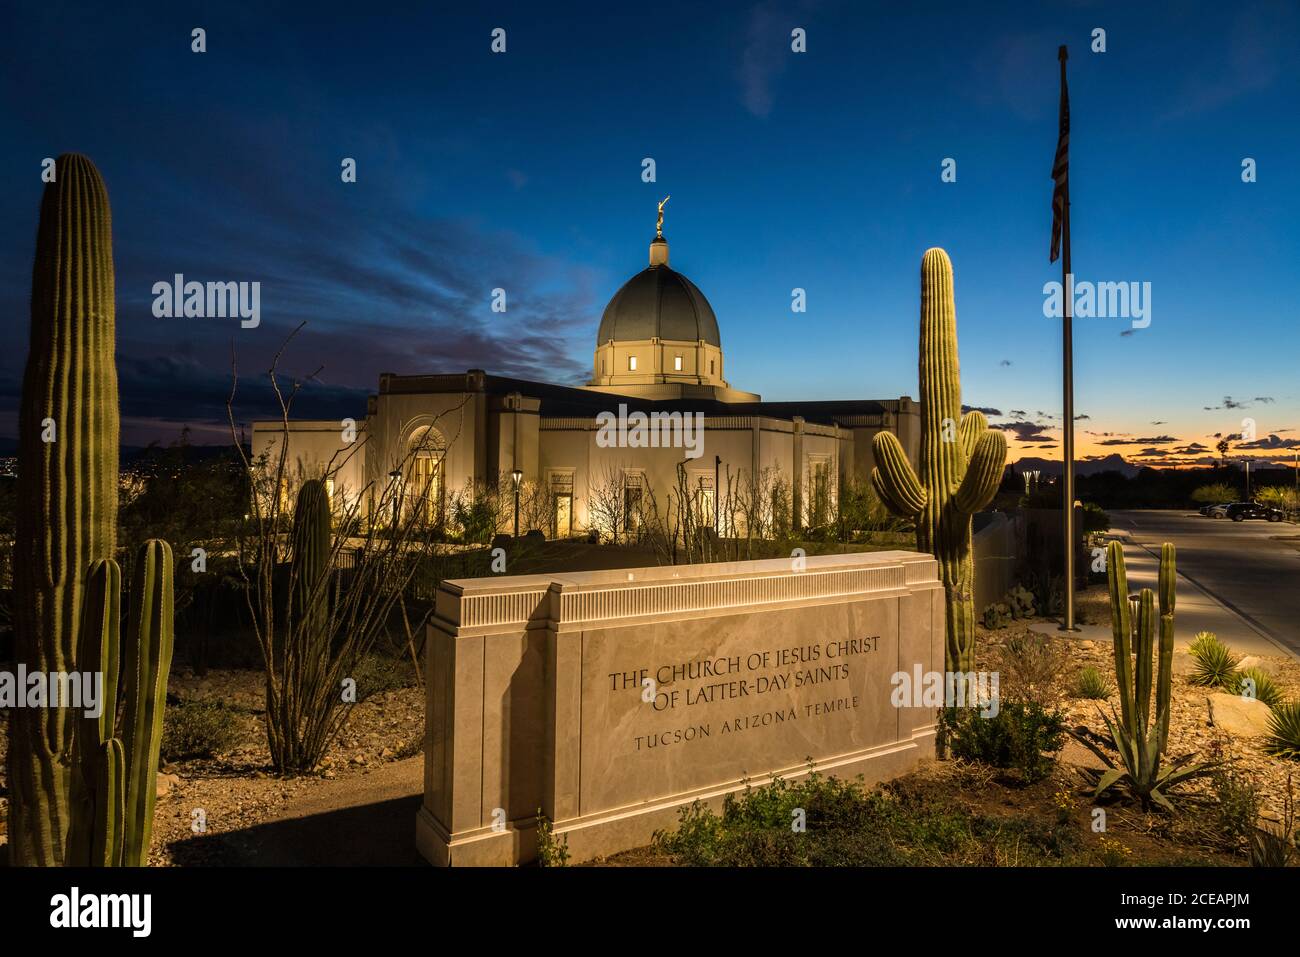 Le temple de Tucson Arizona de l'église de Jésus-Christ des Saints des derniers jours a été conçu dans le style art déco et a des motifs Sonoran Desert. Il a été dé Banque D'Images